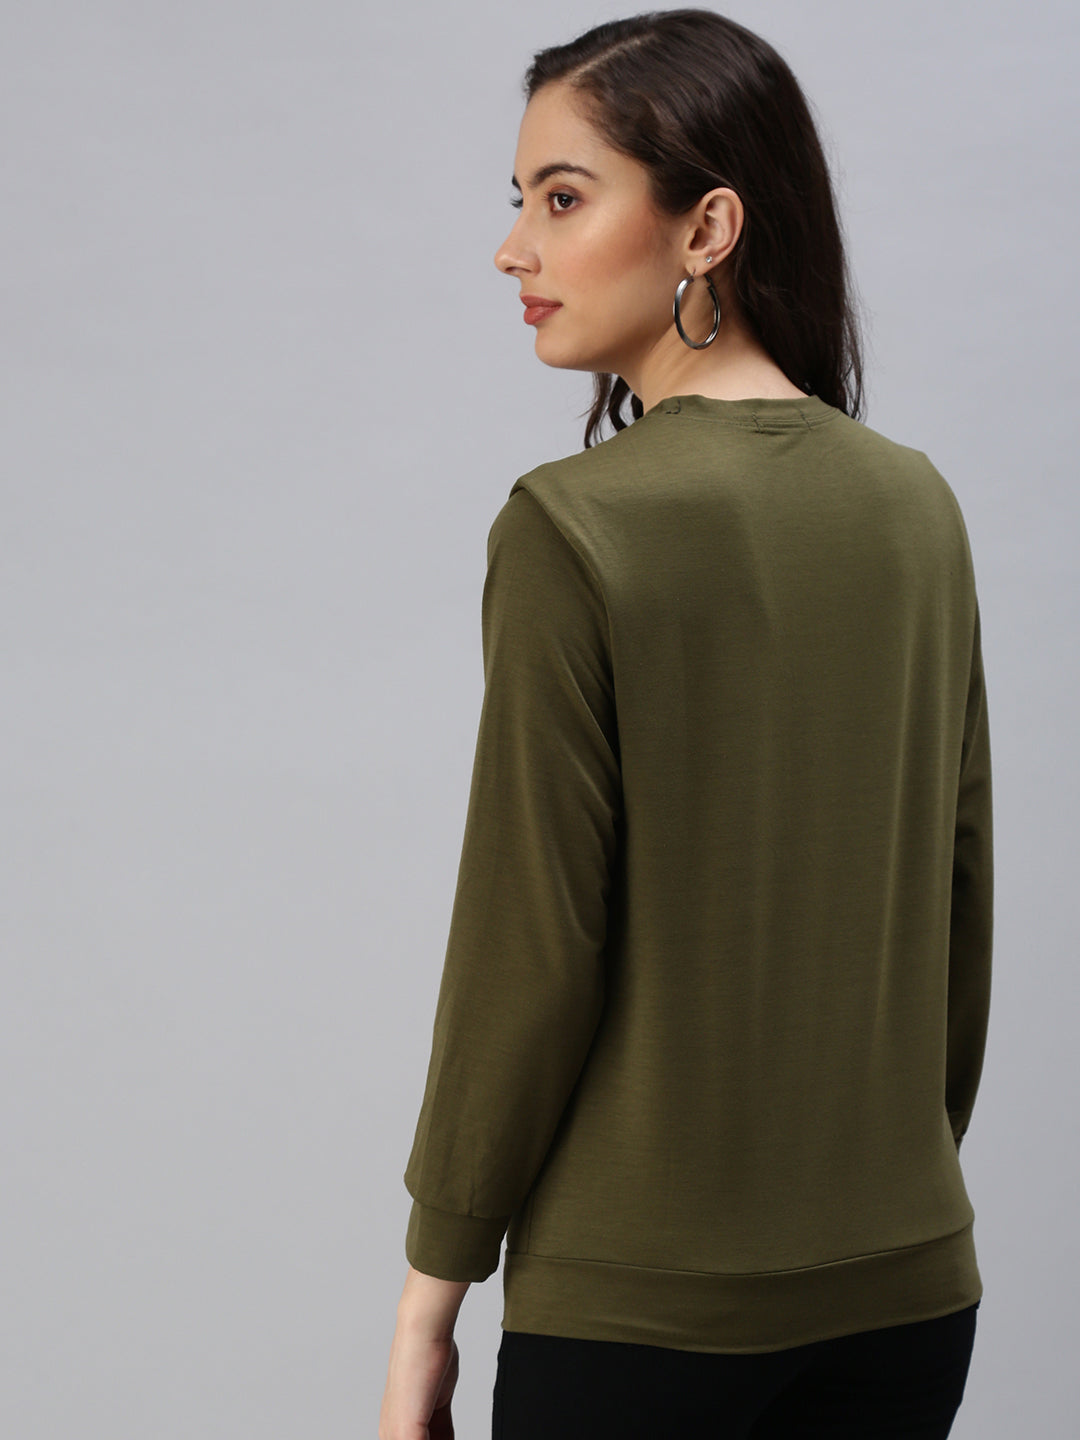 Women's Green Solid SweatShirt